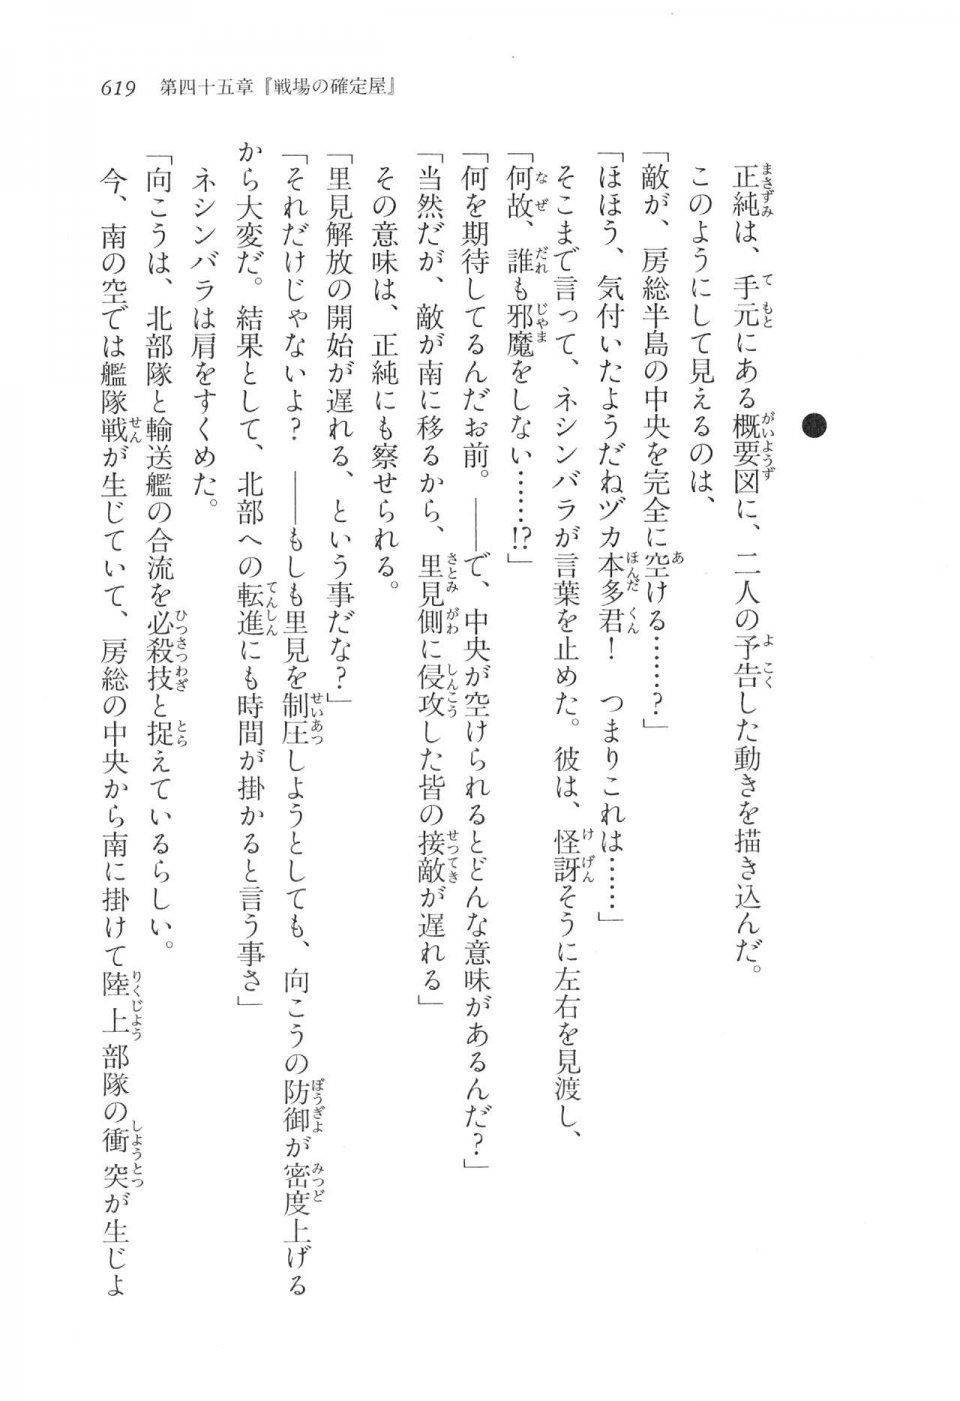 Kyoukai Senjou no Horizon LN Vol 17(7B) - Photo #621